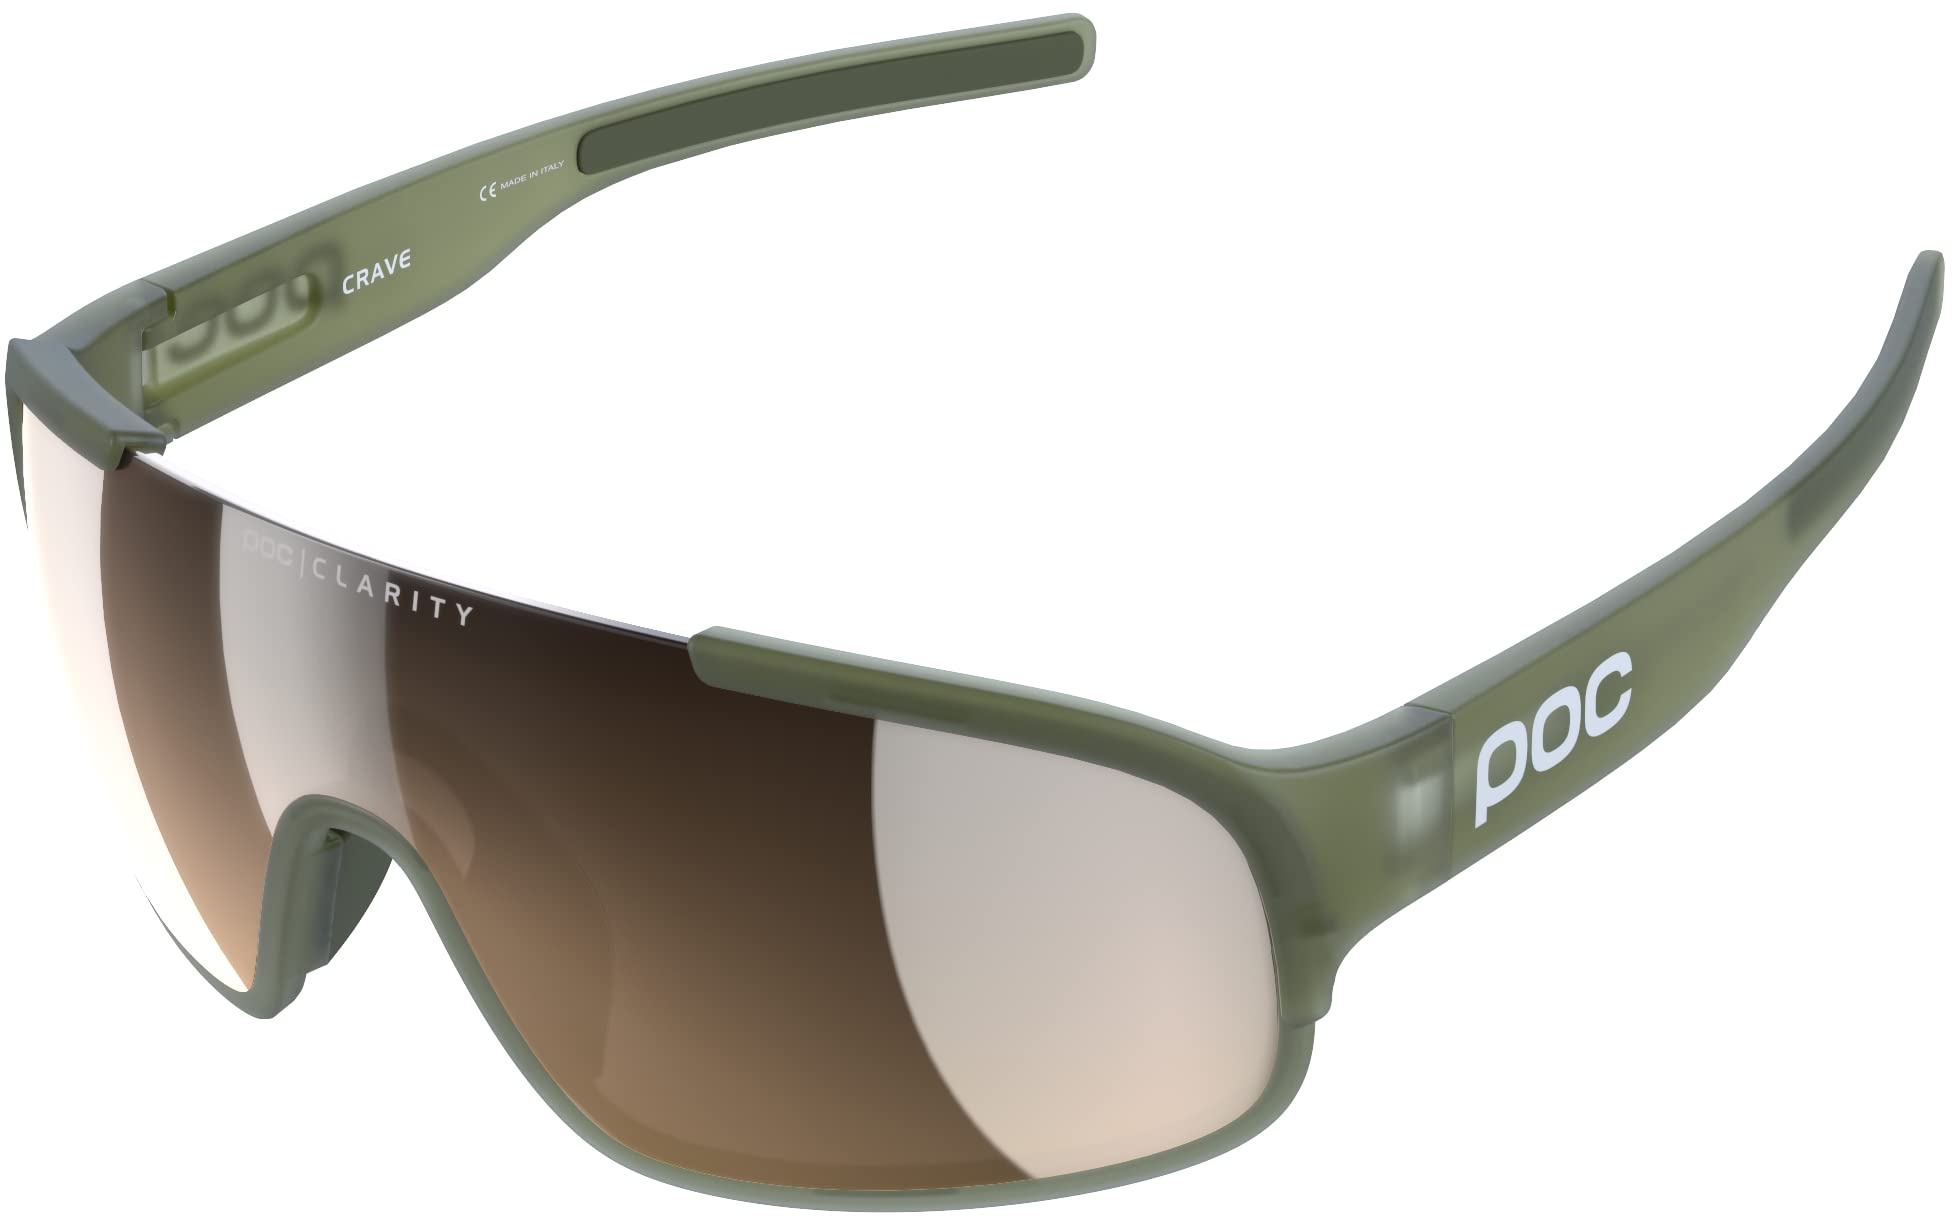 POC Crave Sonnenbrille - Sportbrille mit einem leichten, flexiblen und strapazierfähigen Grilamid-Rahmen ideal für jede sportliche Herausforderung